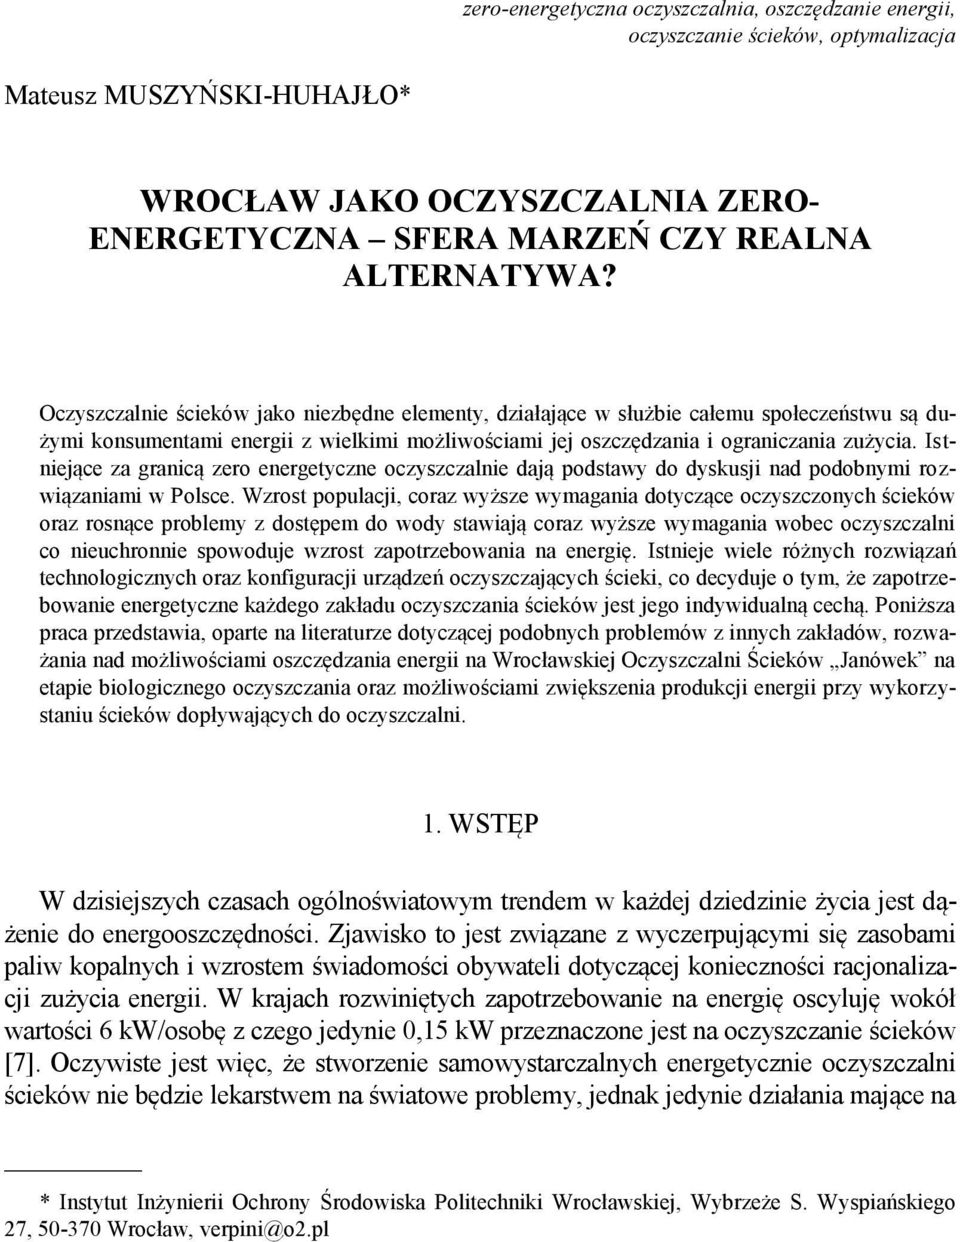 Istniejące za granicą zero energetyczne oczyszczalnie dają podstawy do dyskusji nad podobnymi rozwiązaniami w Polsce.